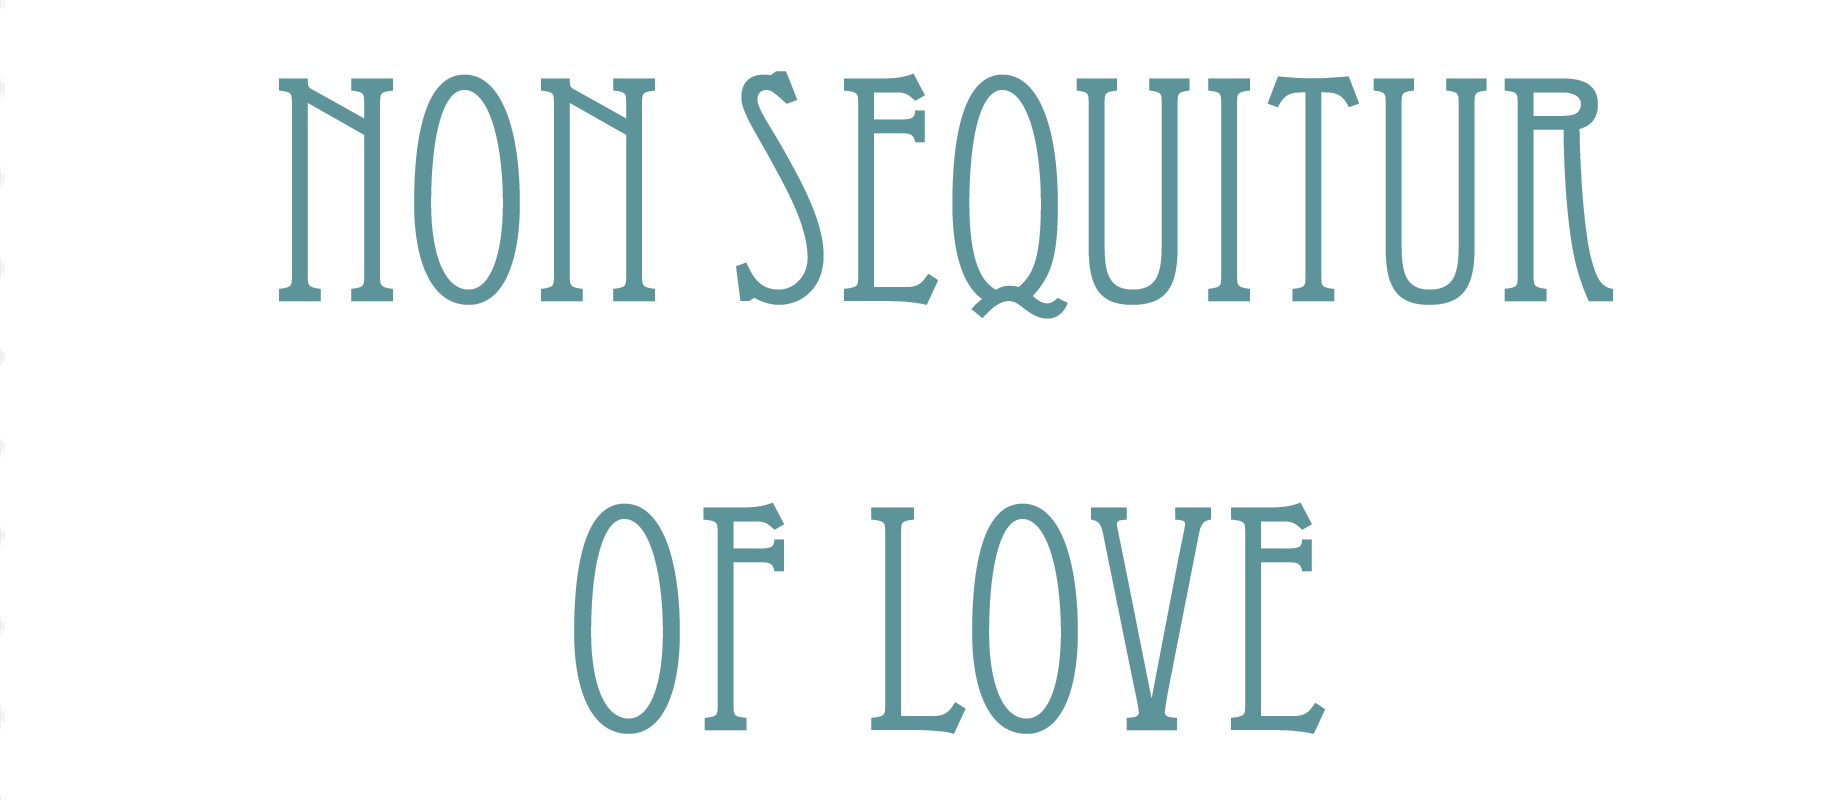 Non Sequitur of Love